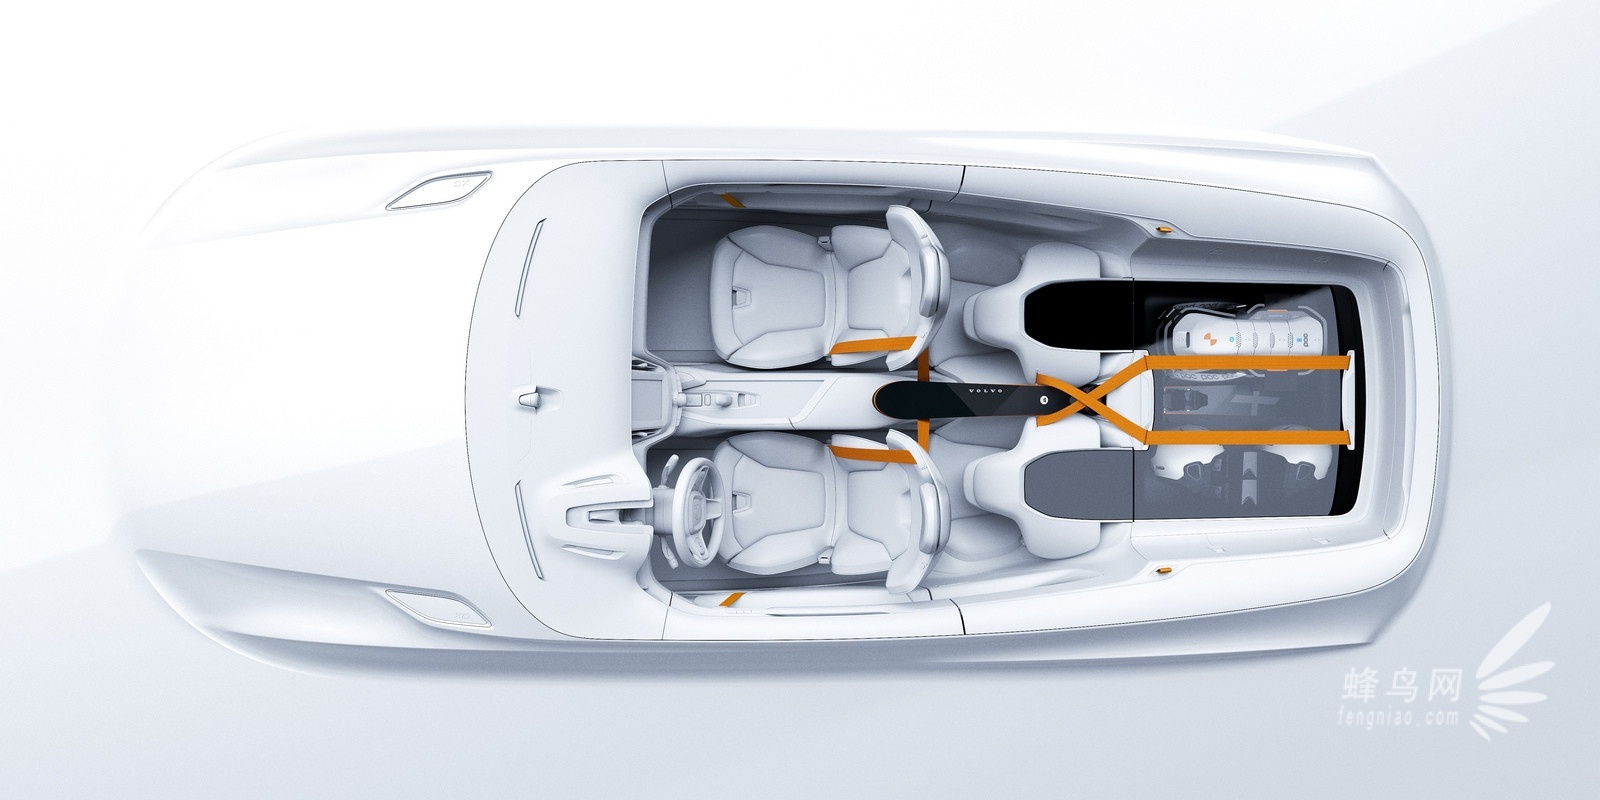 2014款沃尔沃 XC Coupé 概念车官图发布